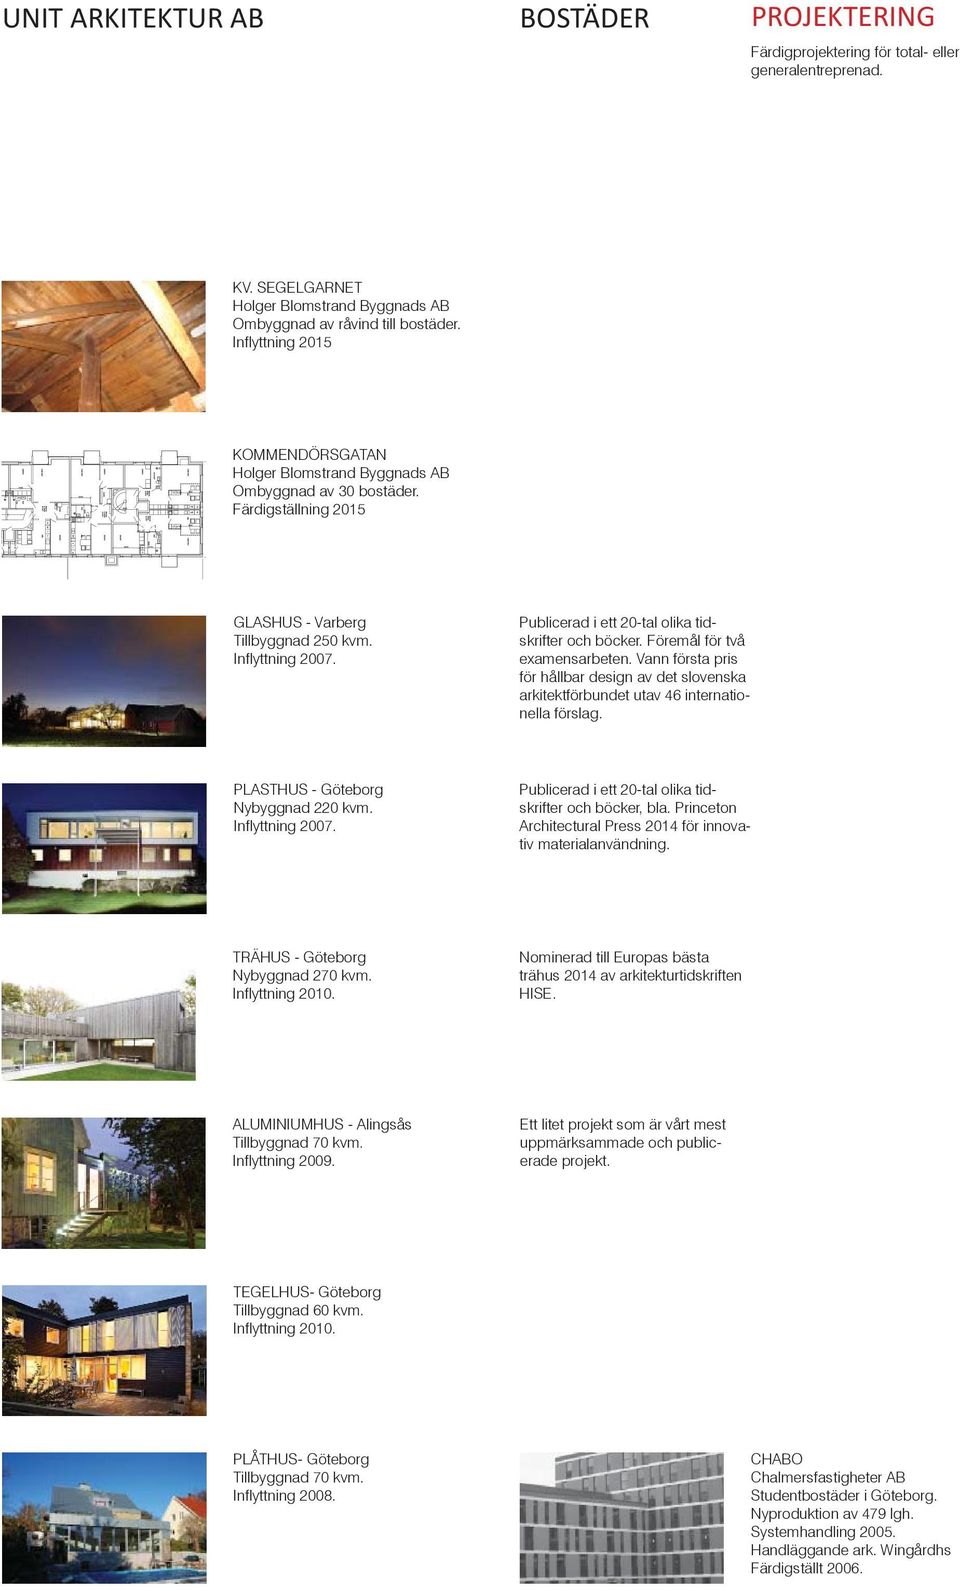 Publicerad i ett 20-tal olika tidskrifter och böcker. Föremål för två examensarbeten. Vann första pris för hållbar design av det slovenska arkitektförbundet utav 46 internationella förslag.